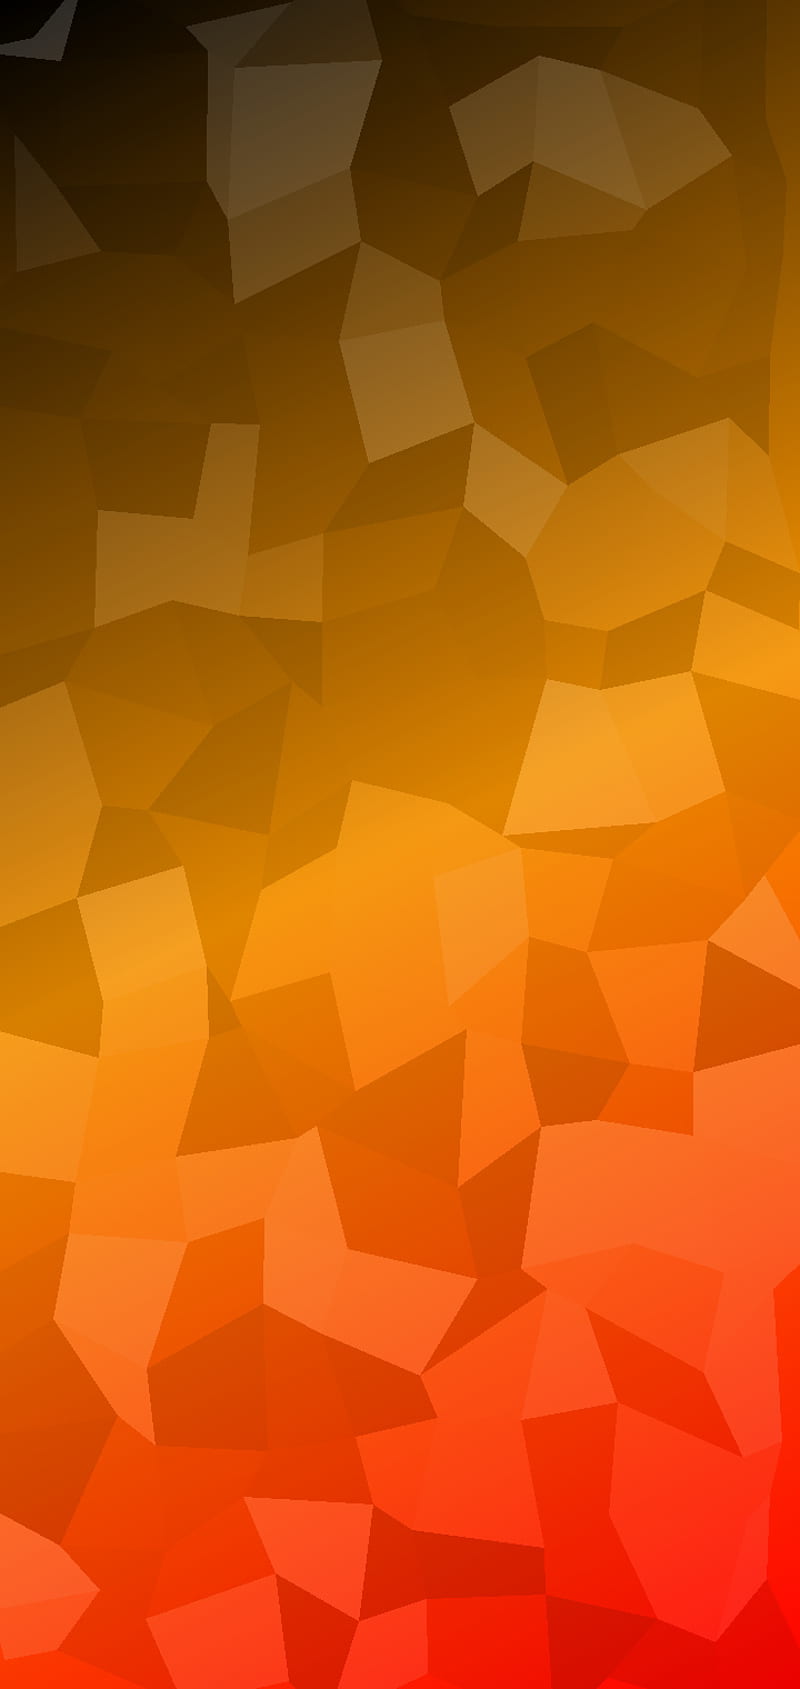 Orange and white nebula Wallpaper 8k Ultra HD ID:11081